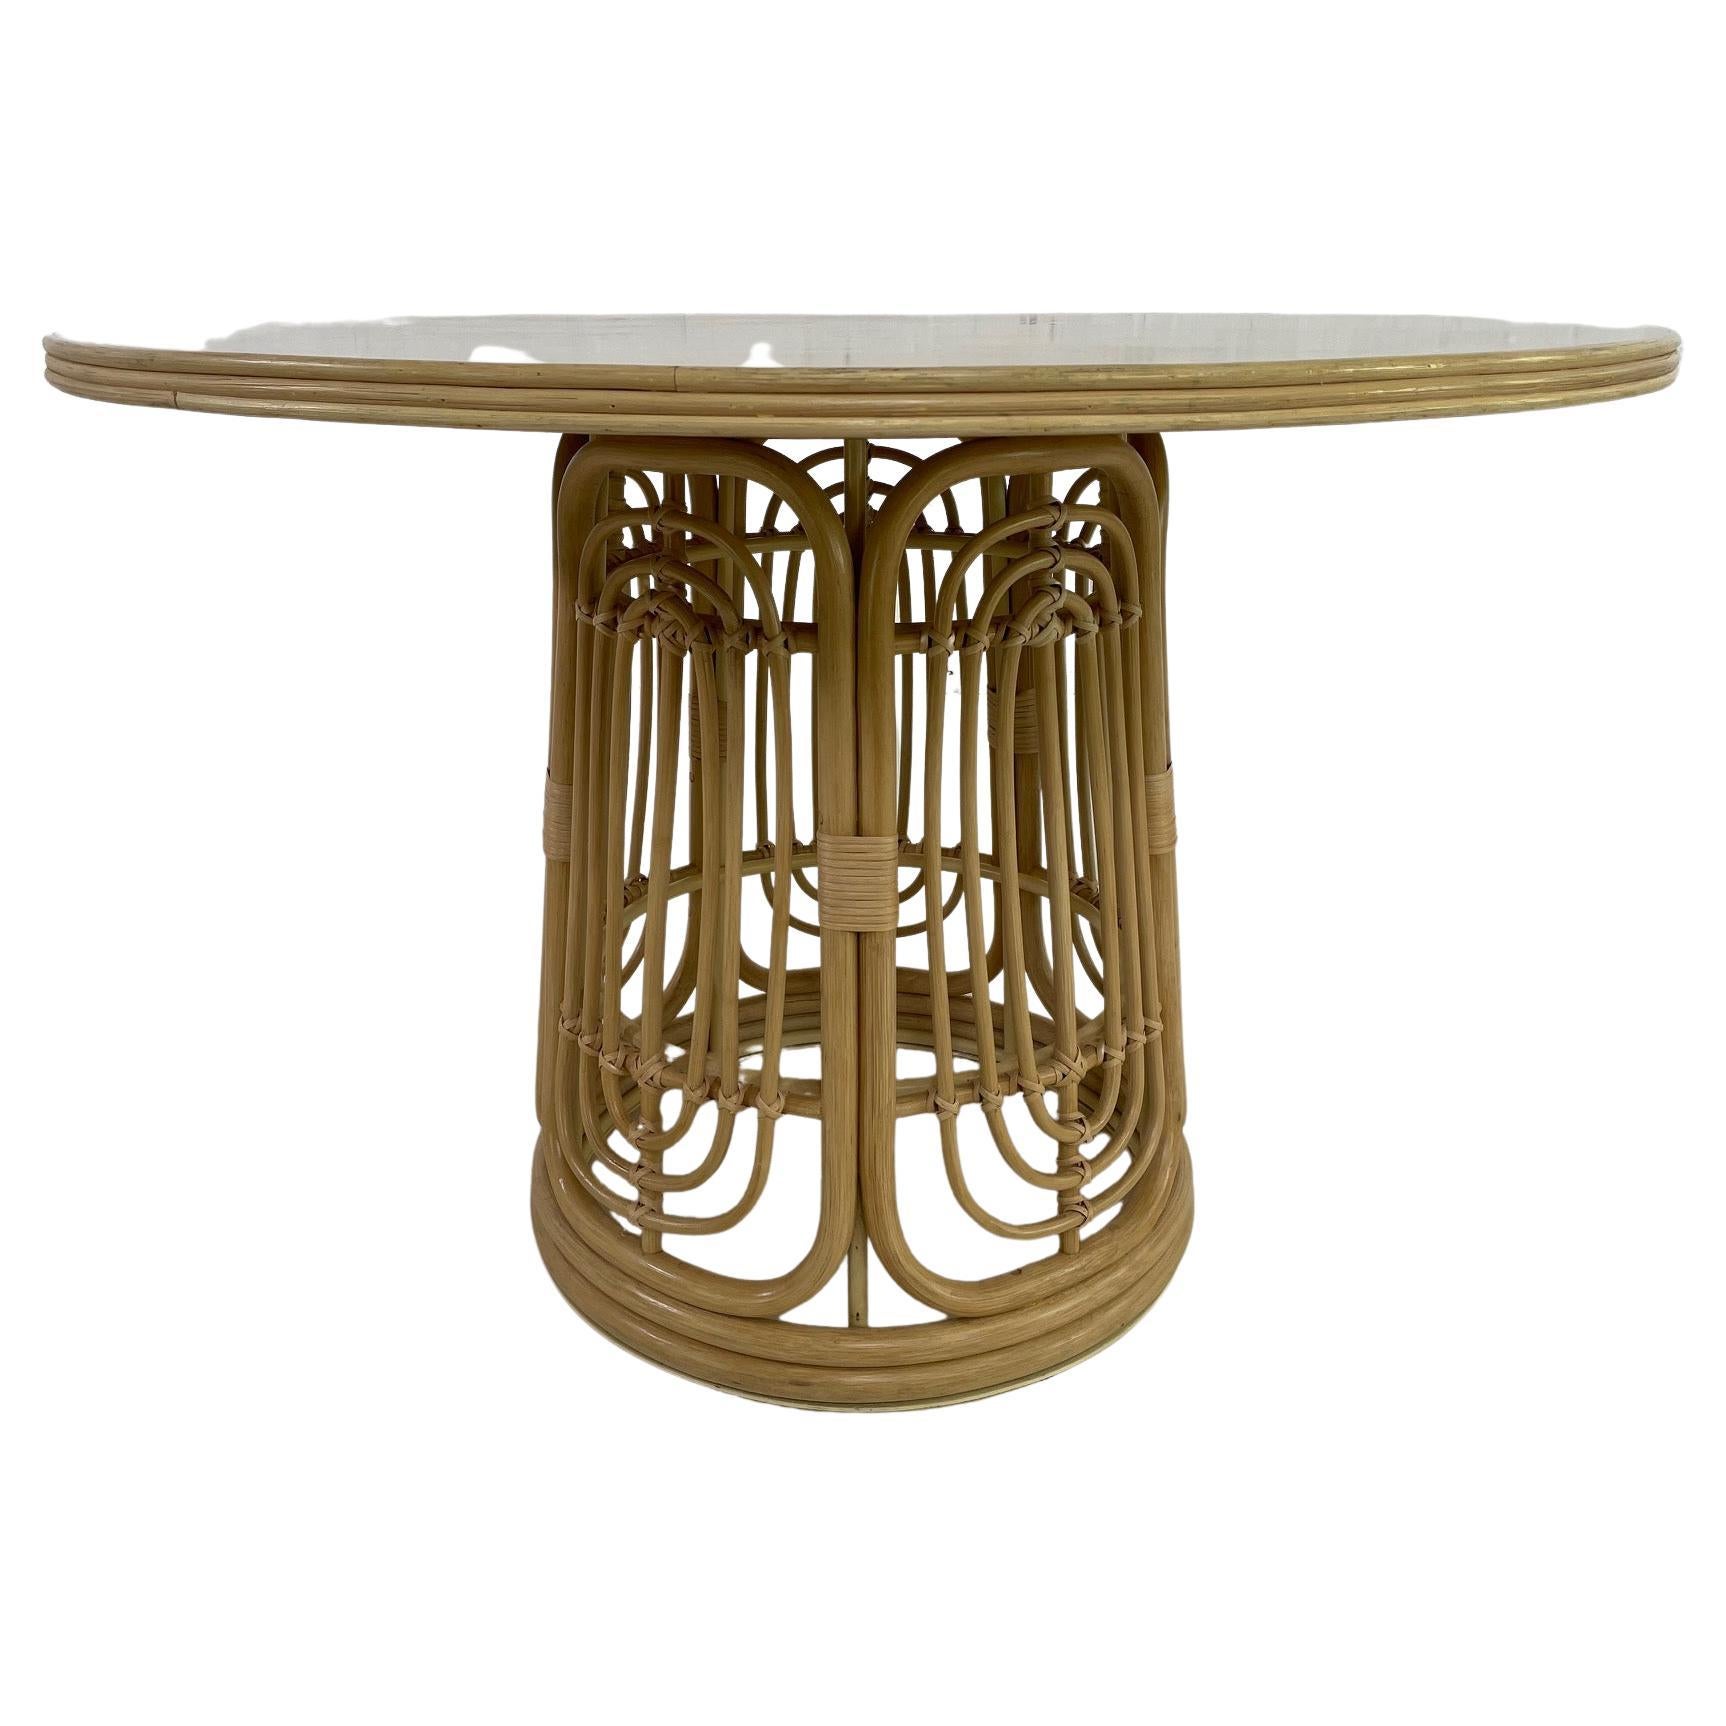 Guéridon rond de style design italien des années 1970 composé d'une structure en métal avec base en rotin graphique et aérien ornée d'un plateau rond en bois.